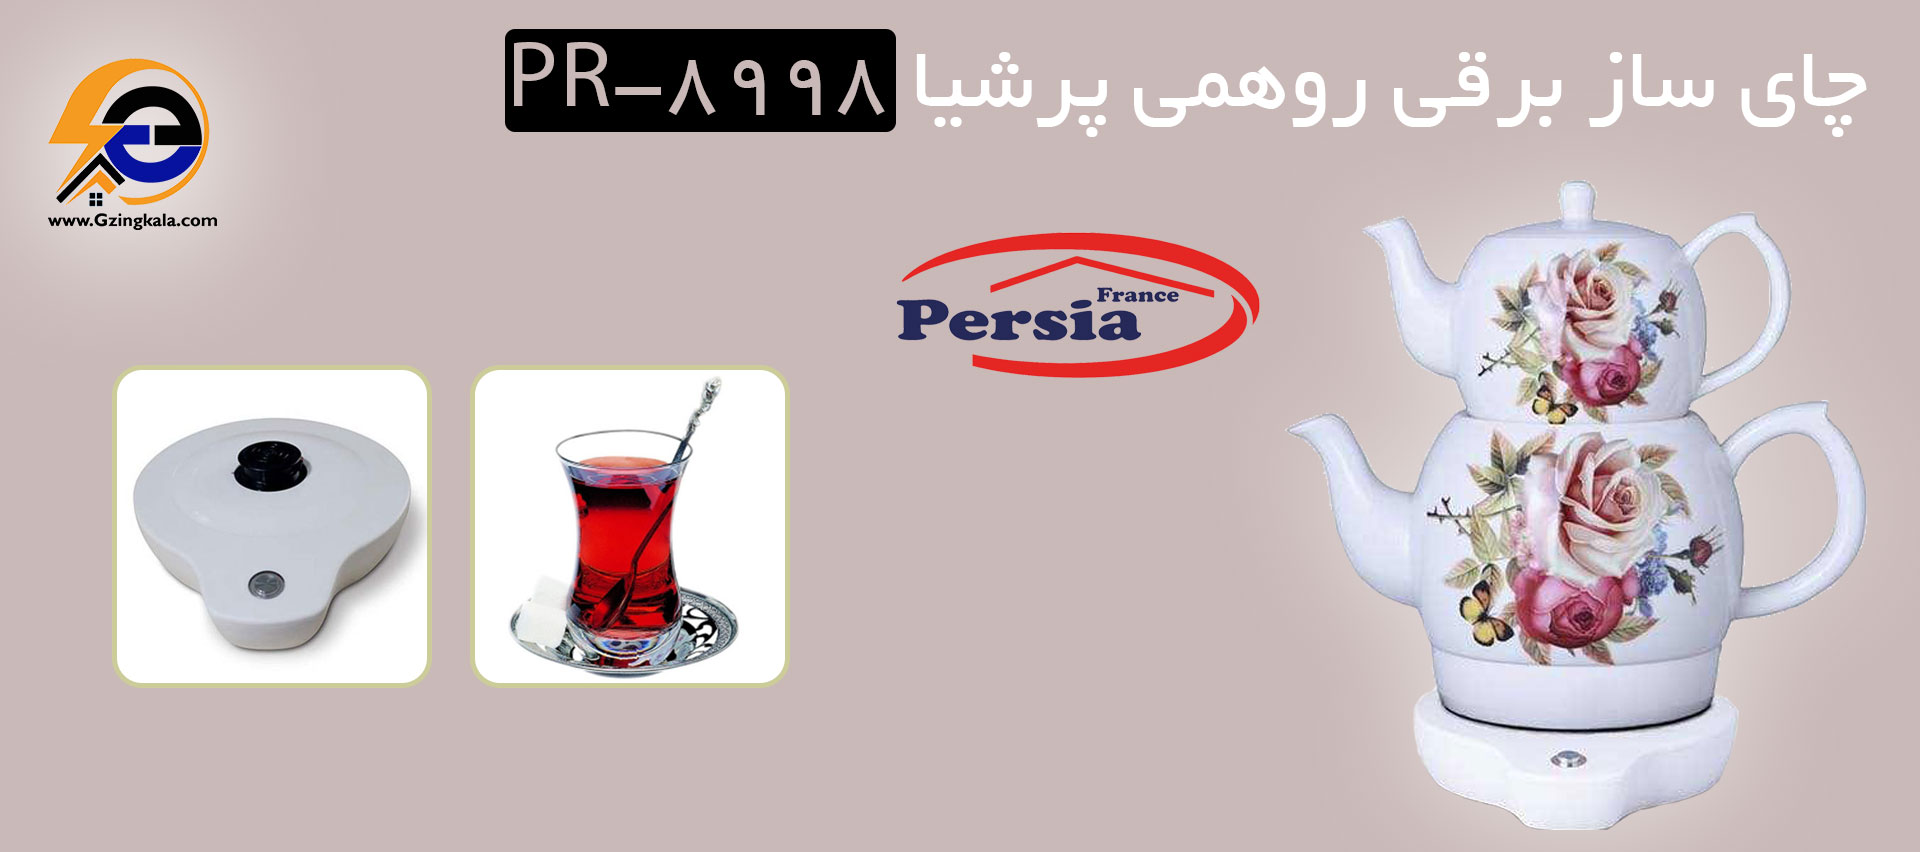 چای ساز برقی روهمی پرشیا PR-8998